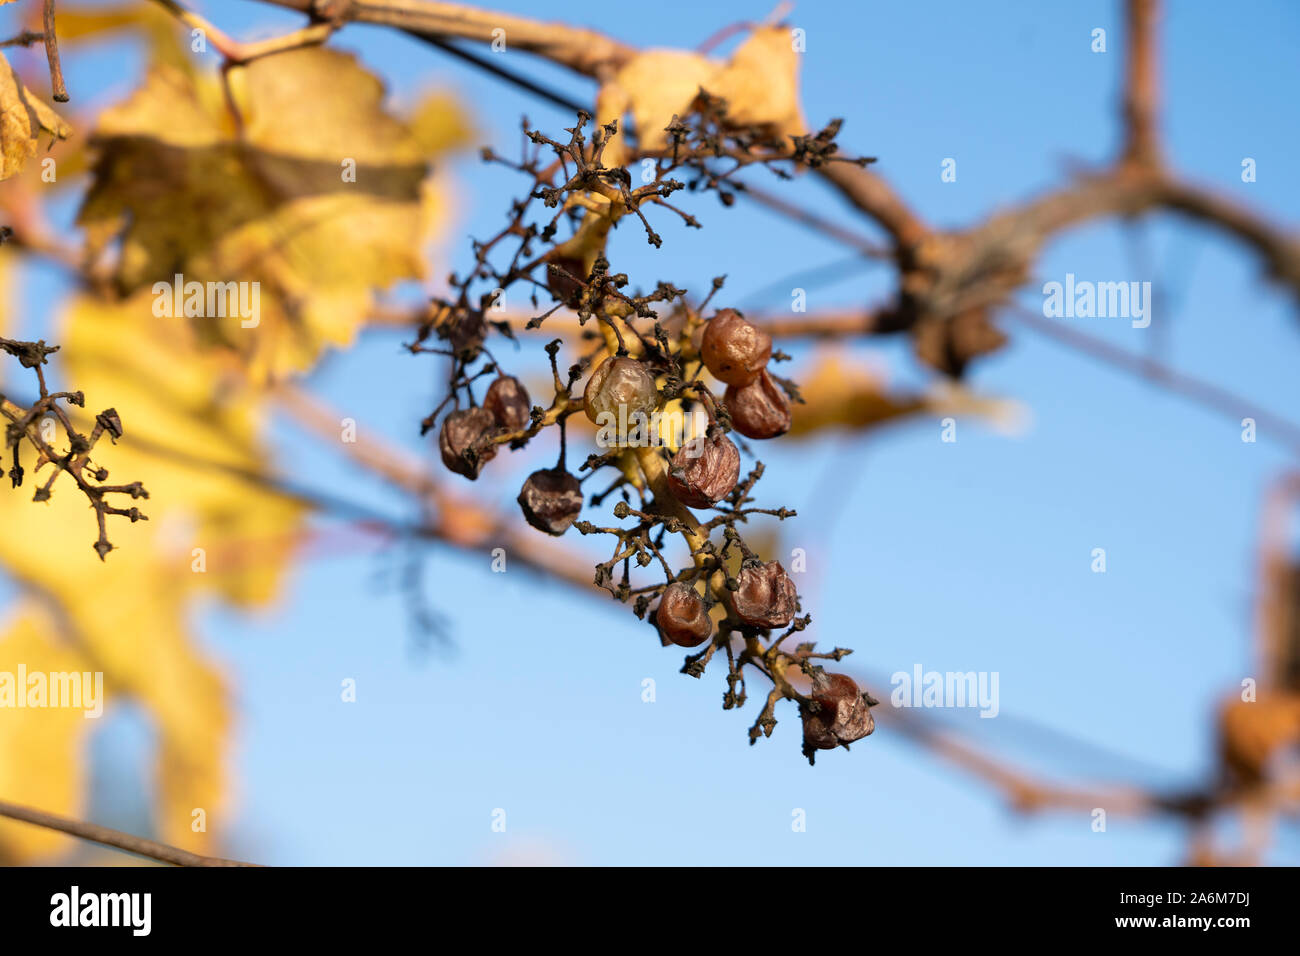 Unharvested verschrumpelte Trauben auf einem europäischen Weinreben im Herbst, wo die Tiere die meisten Trauben gegessen, Langenlois, Niederösterreich Stockfoto